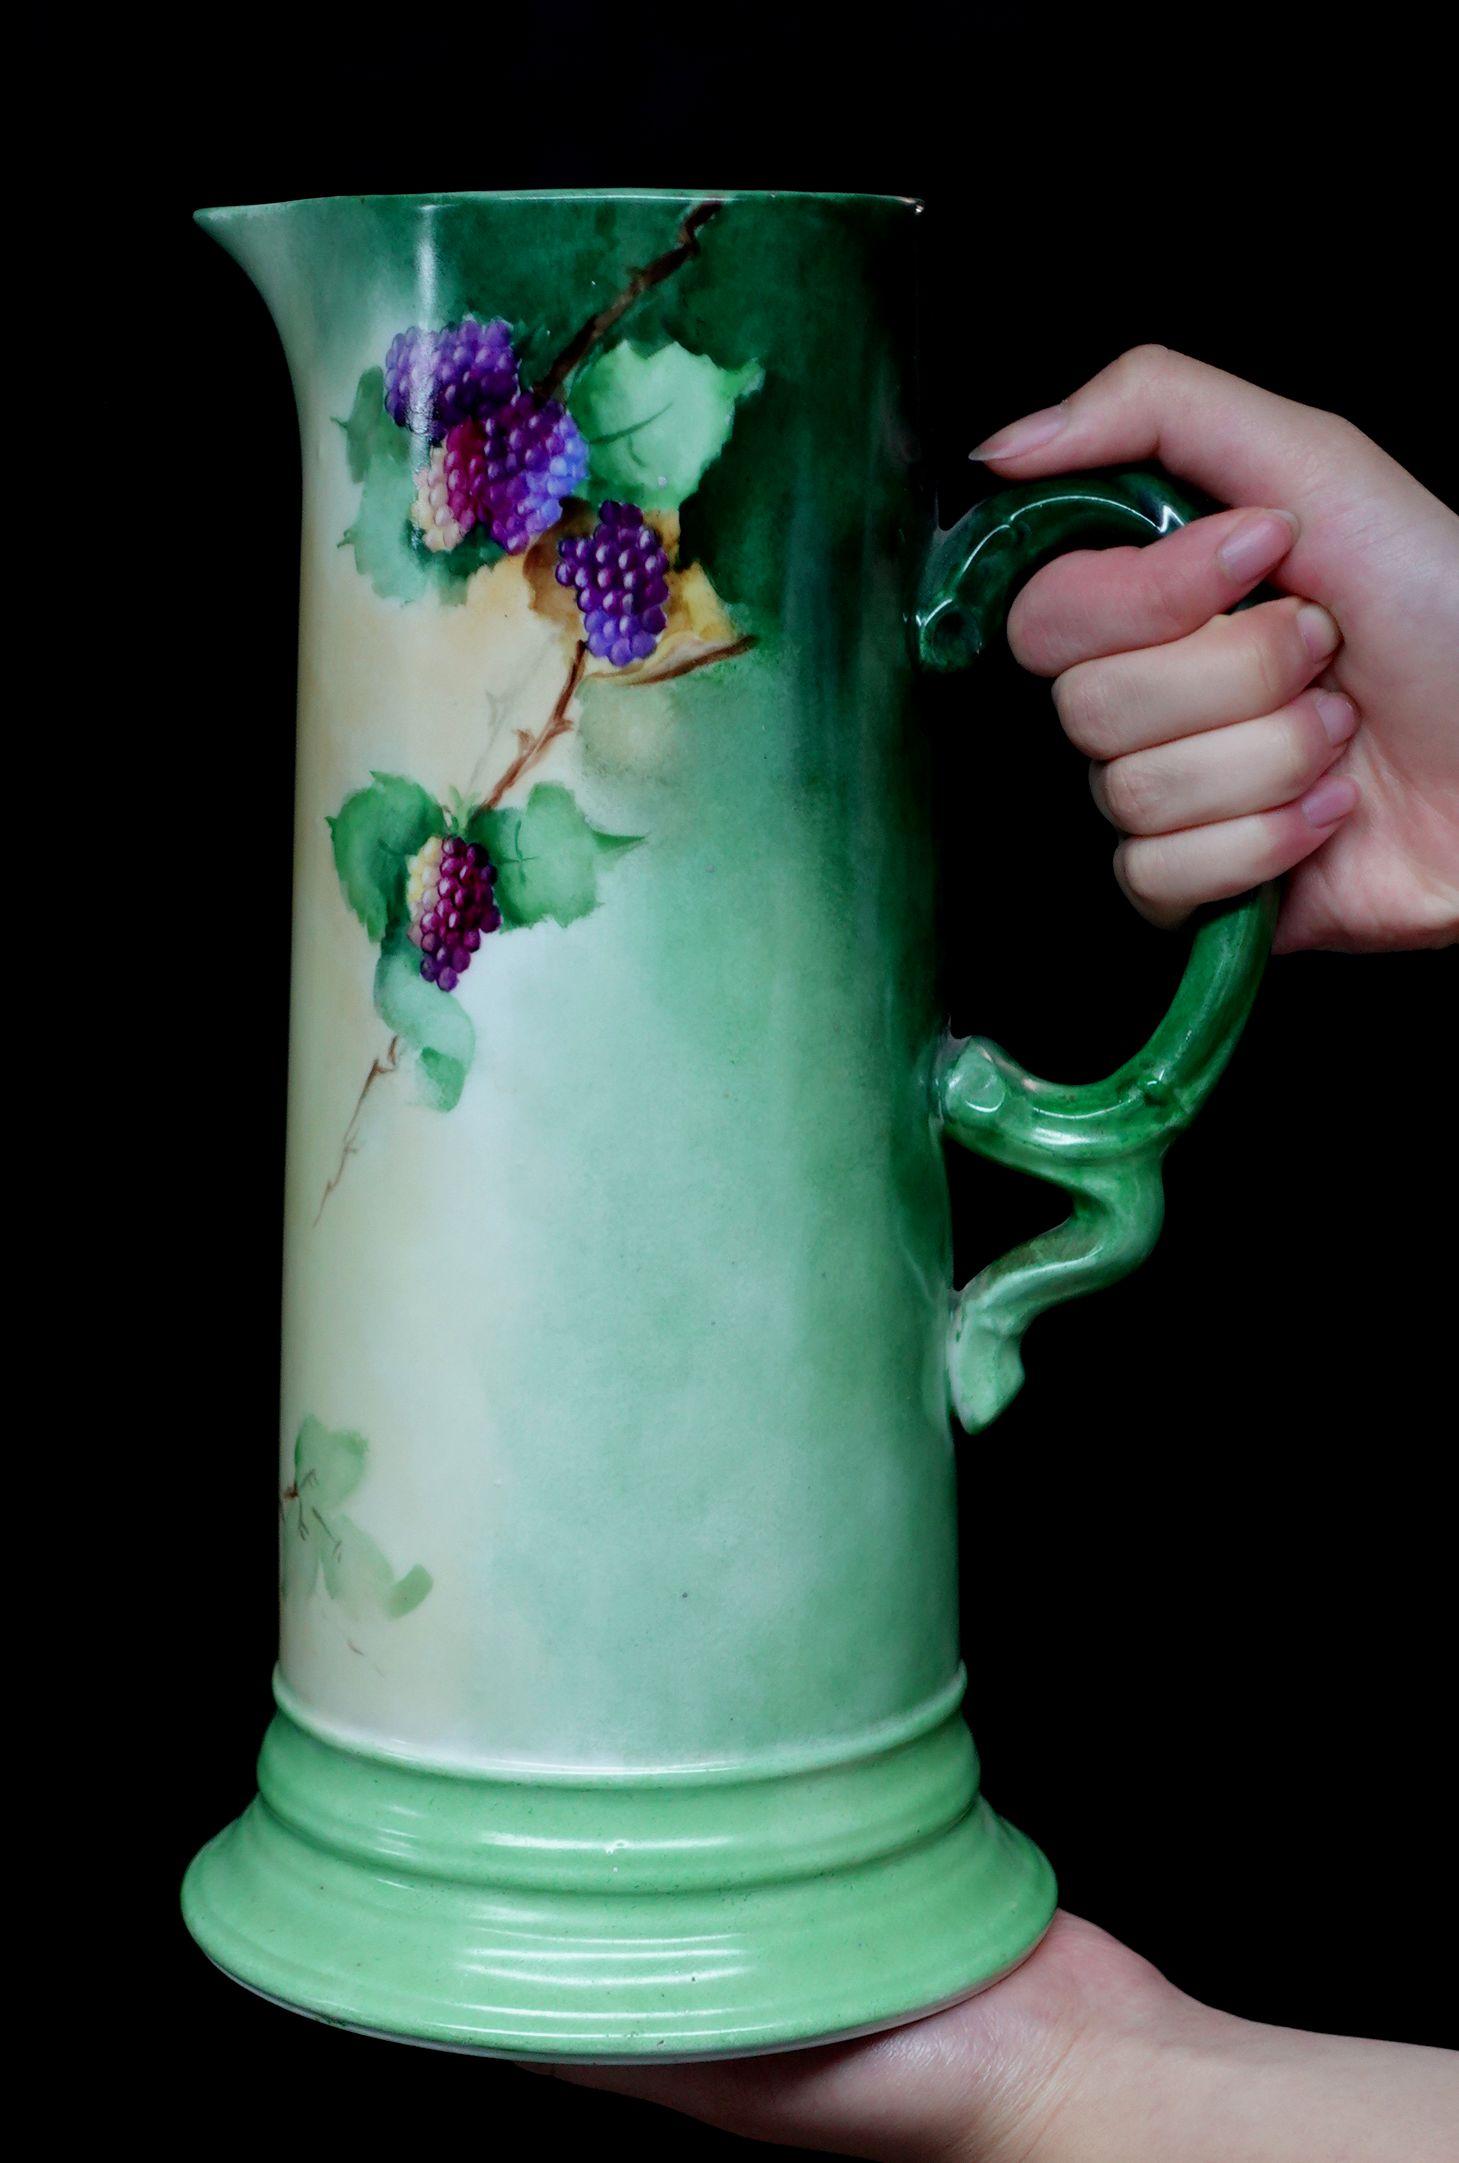 Eine wunderbare antike große antike J.P. Französisch floralen Porzellan dekoriert Krug bietet eine kurvenförmige Rand absolut 100% handgemalten Trauben in rot, braun-rot, lila, und reichlich grüne Blätter, zarte Anordnung der Zusammensetzung, leicht